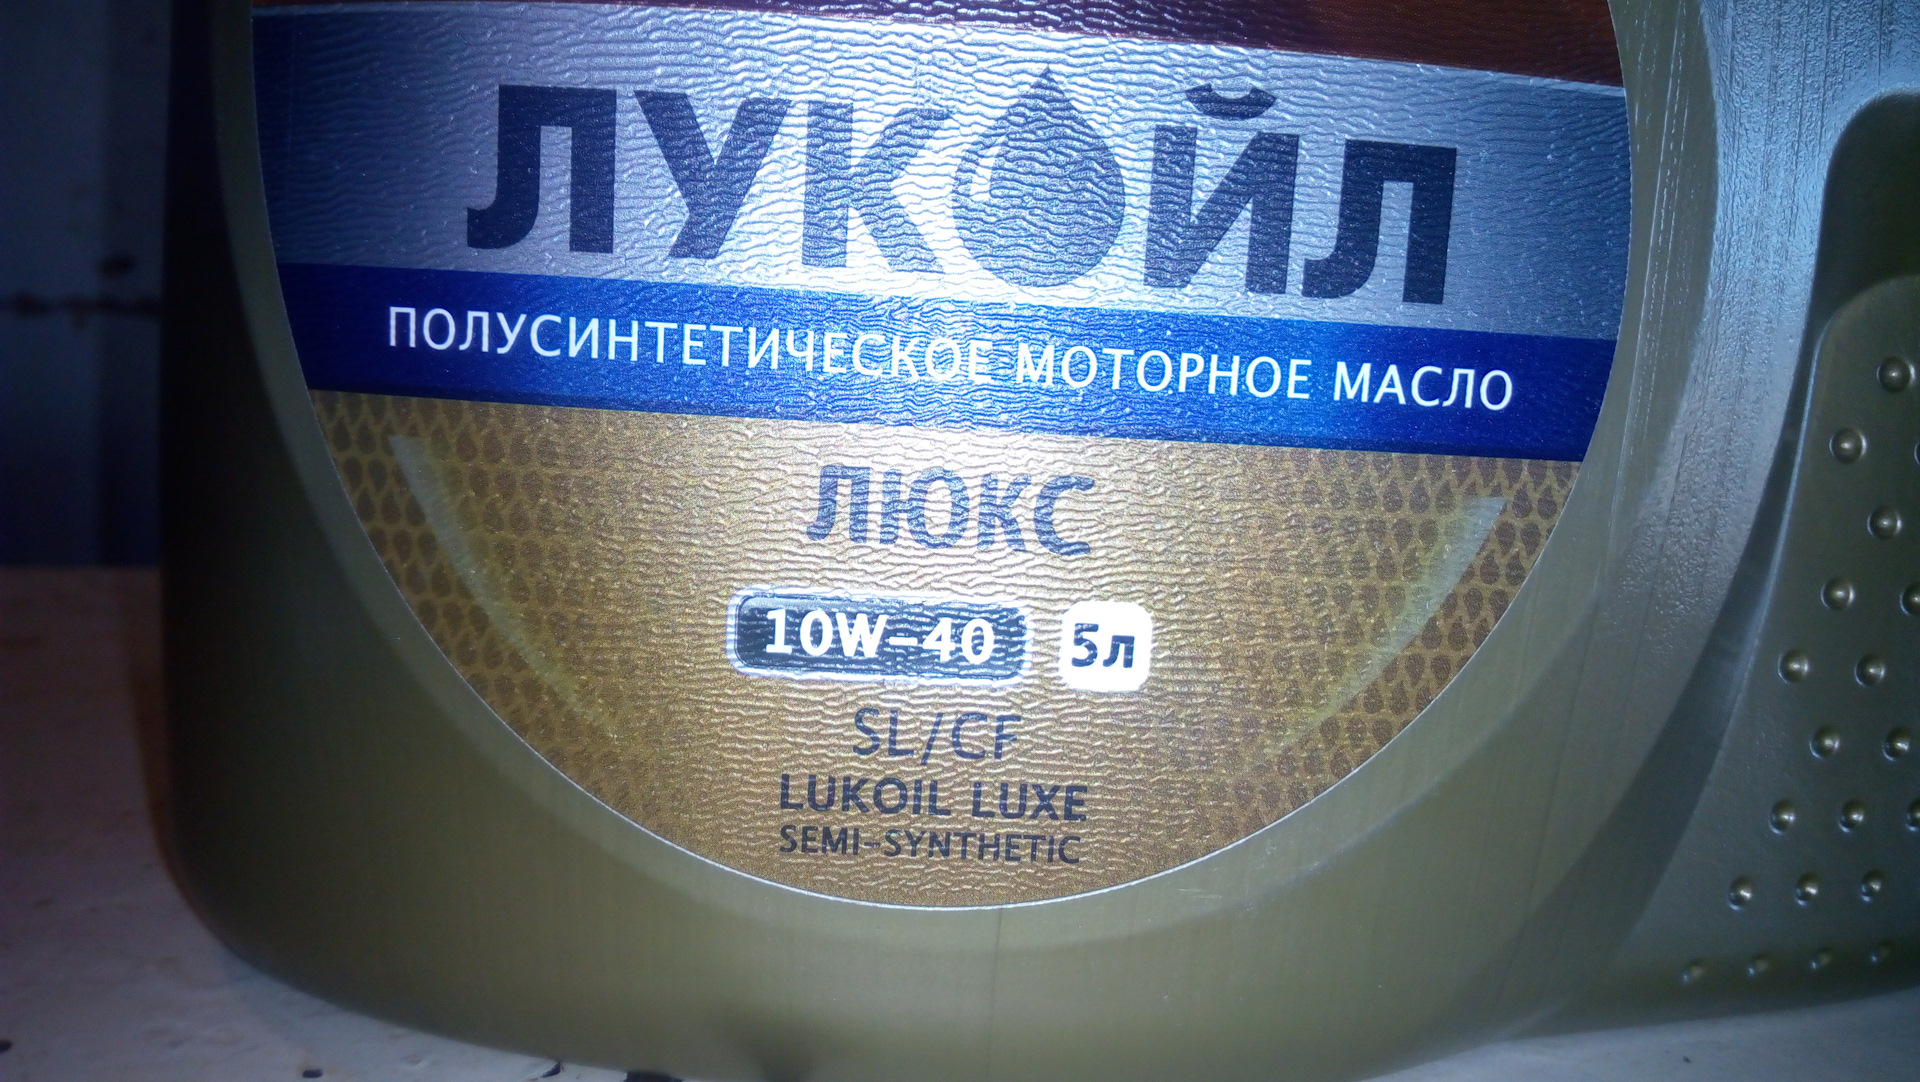 Lukoil замена масла шильдик. Люкс 40 80 Подик. Масла россия дилеры